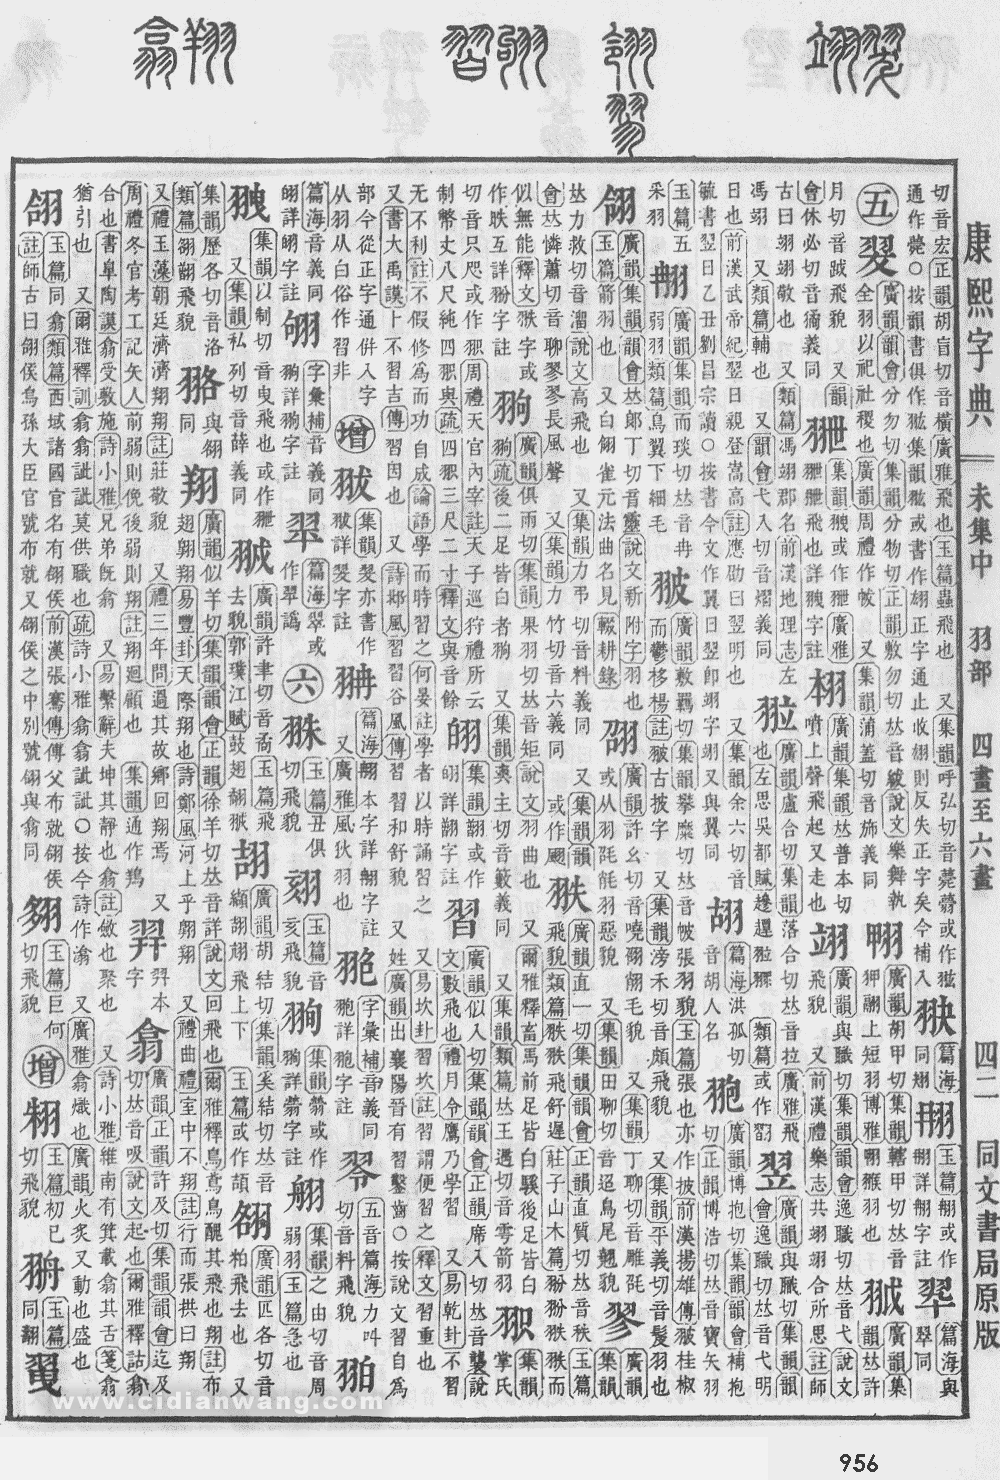 康熙字典掃描版第956頁